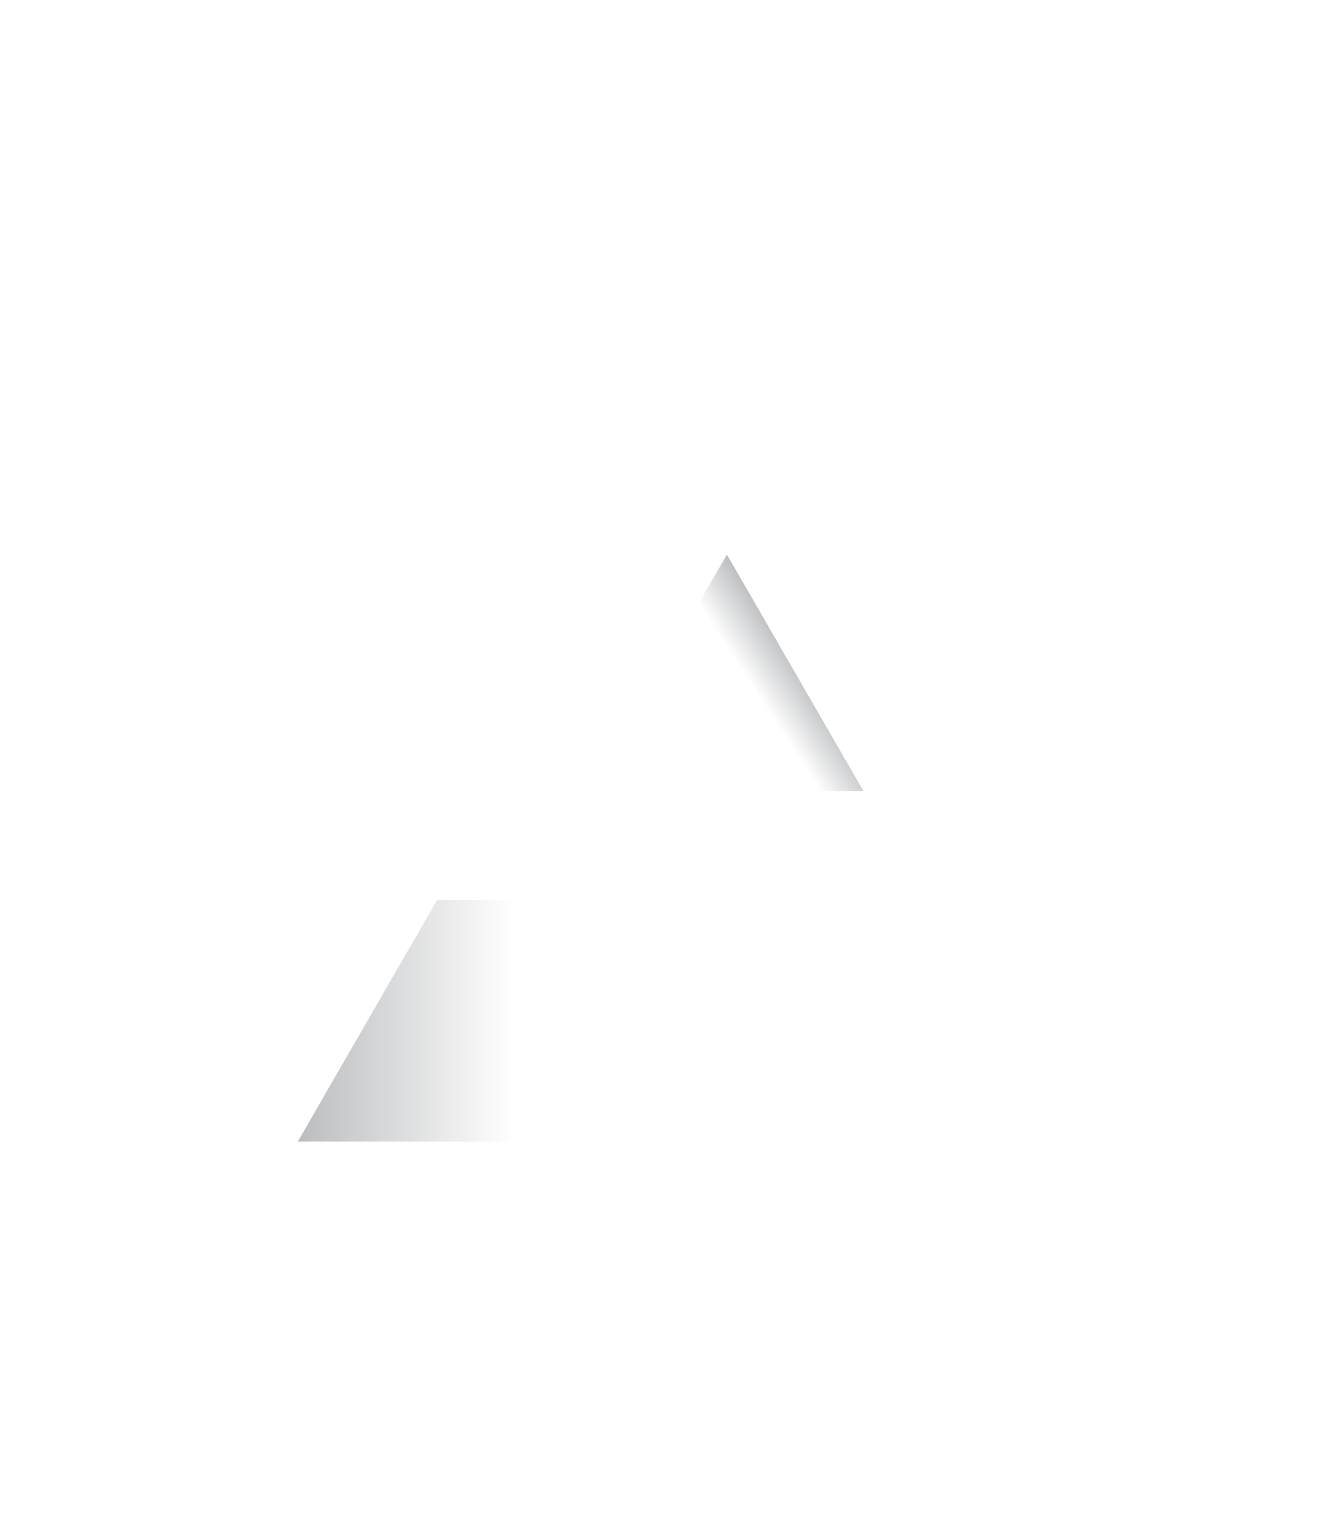 Vivid Games logo large for dark backgrounds (transparent PNG)